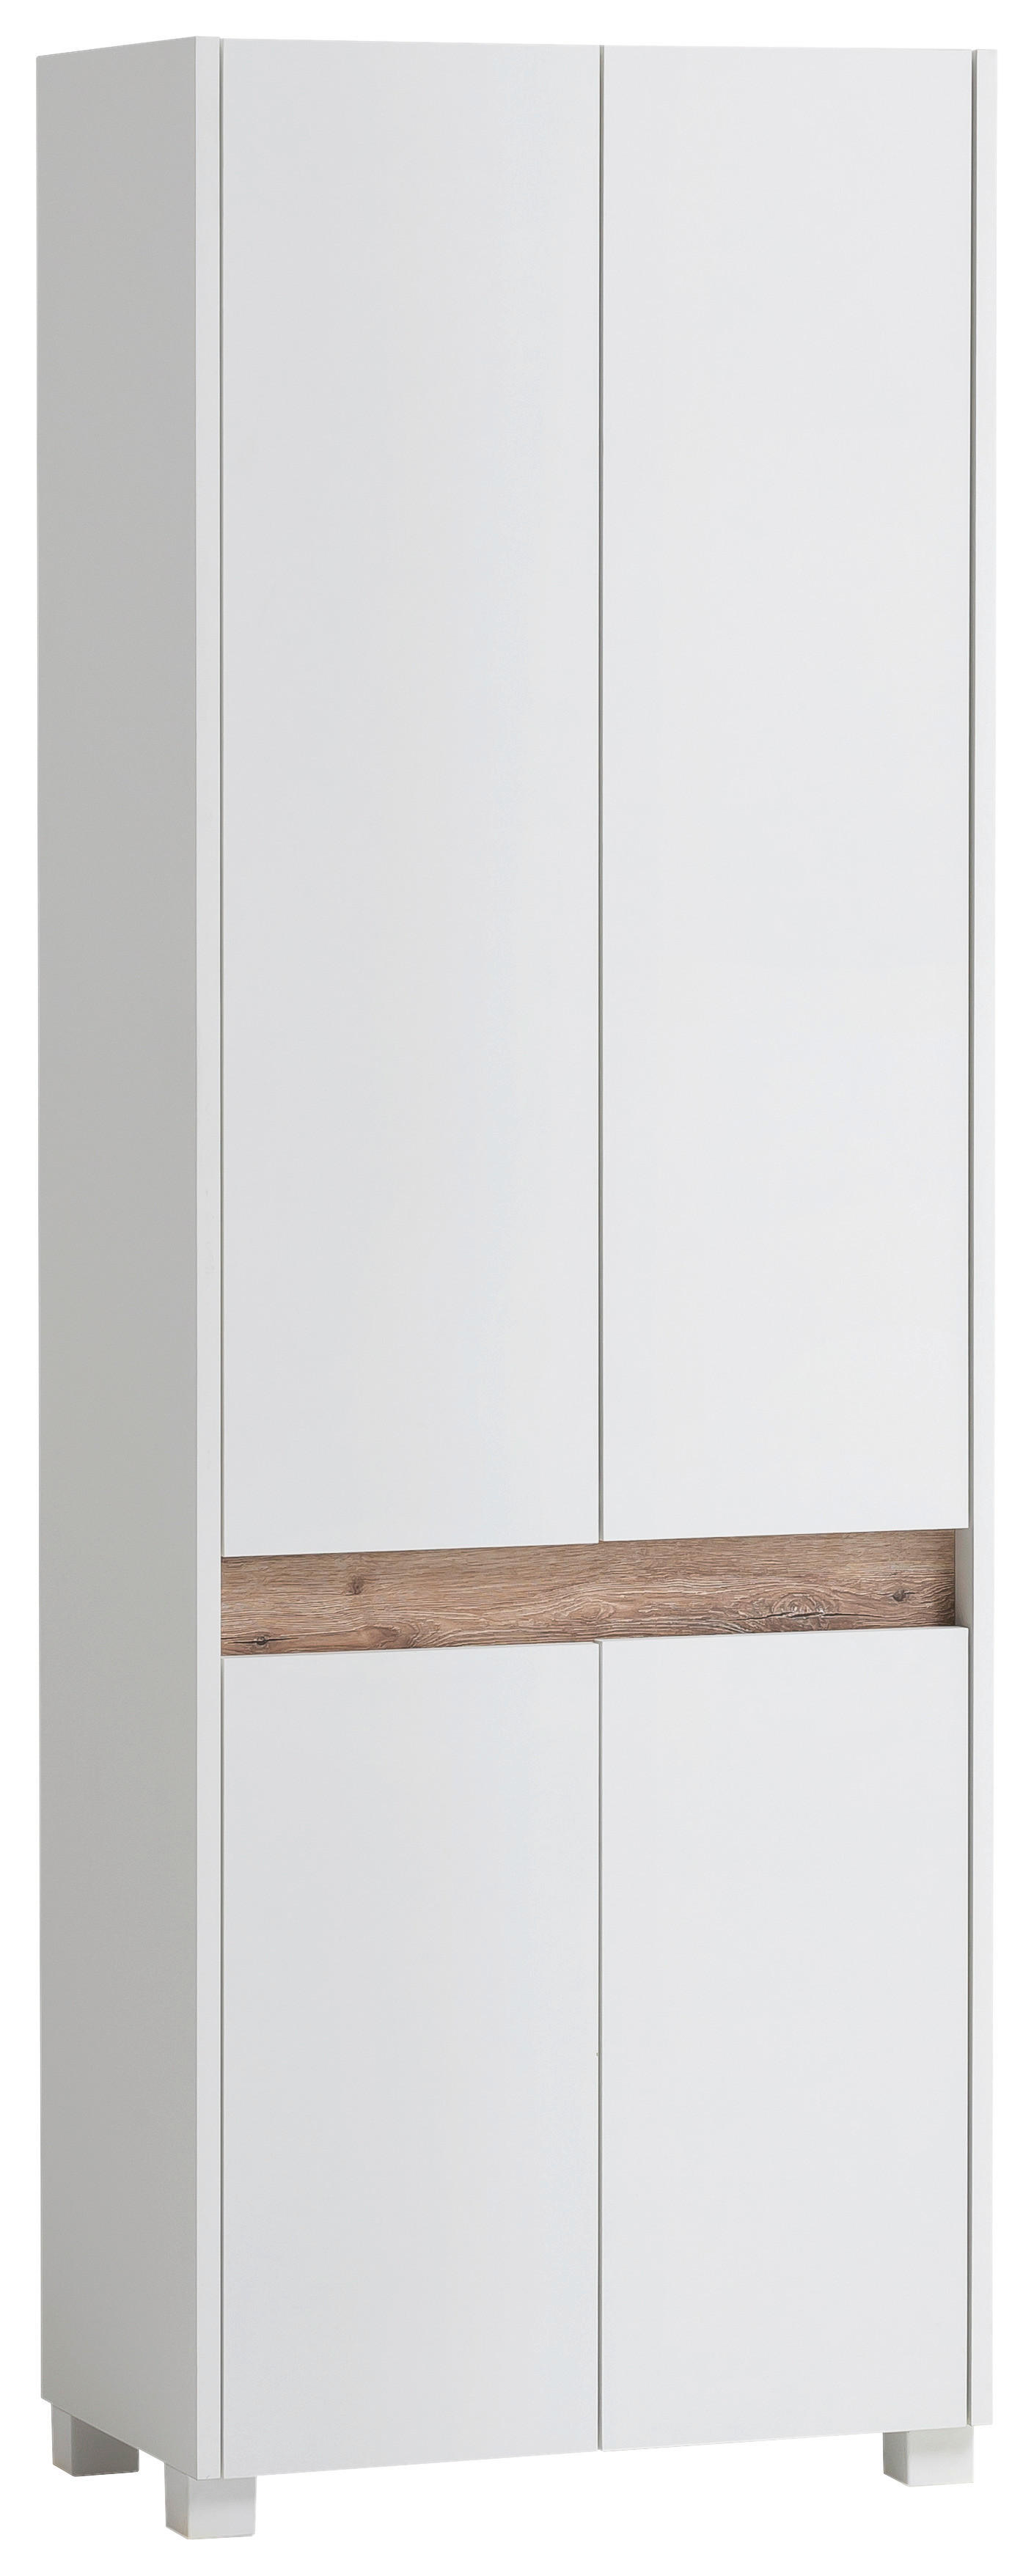 SCHUHSCHRANK Weiß  - Silberfarben/Weiß, Design, Holzwerkstoff/Kunststoff (56,9/164,5/33cm) - MID.YOU